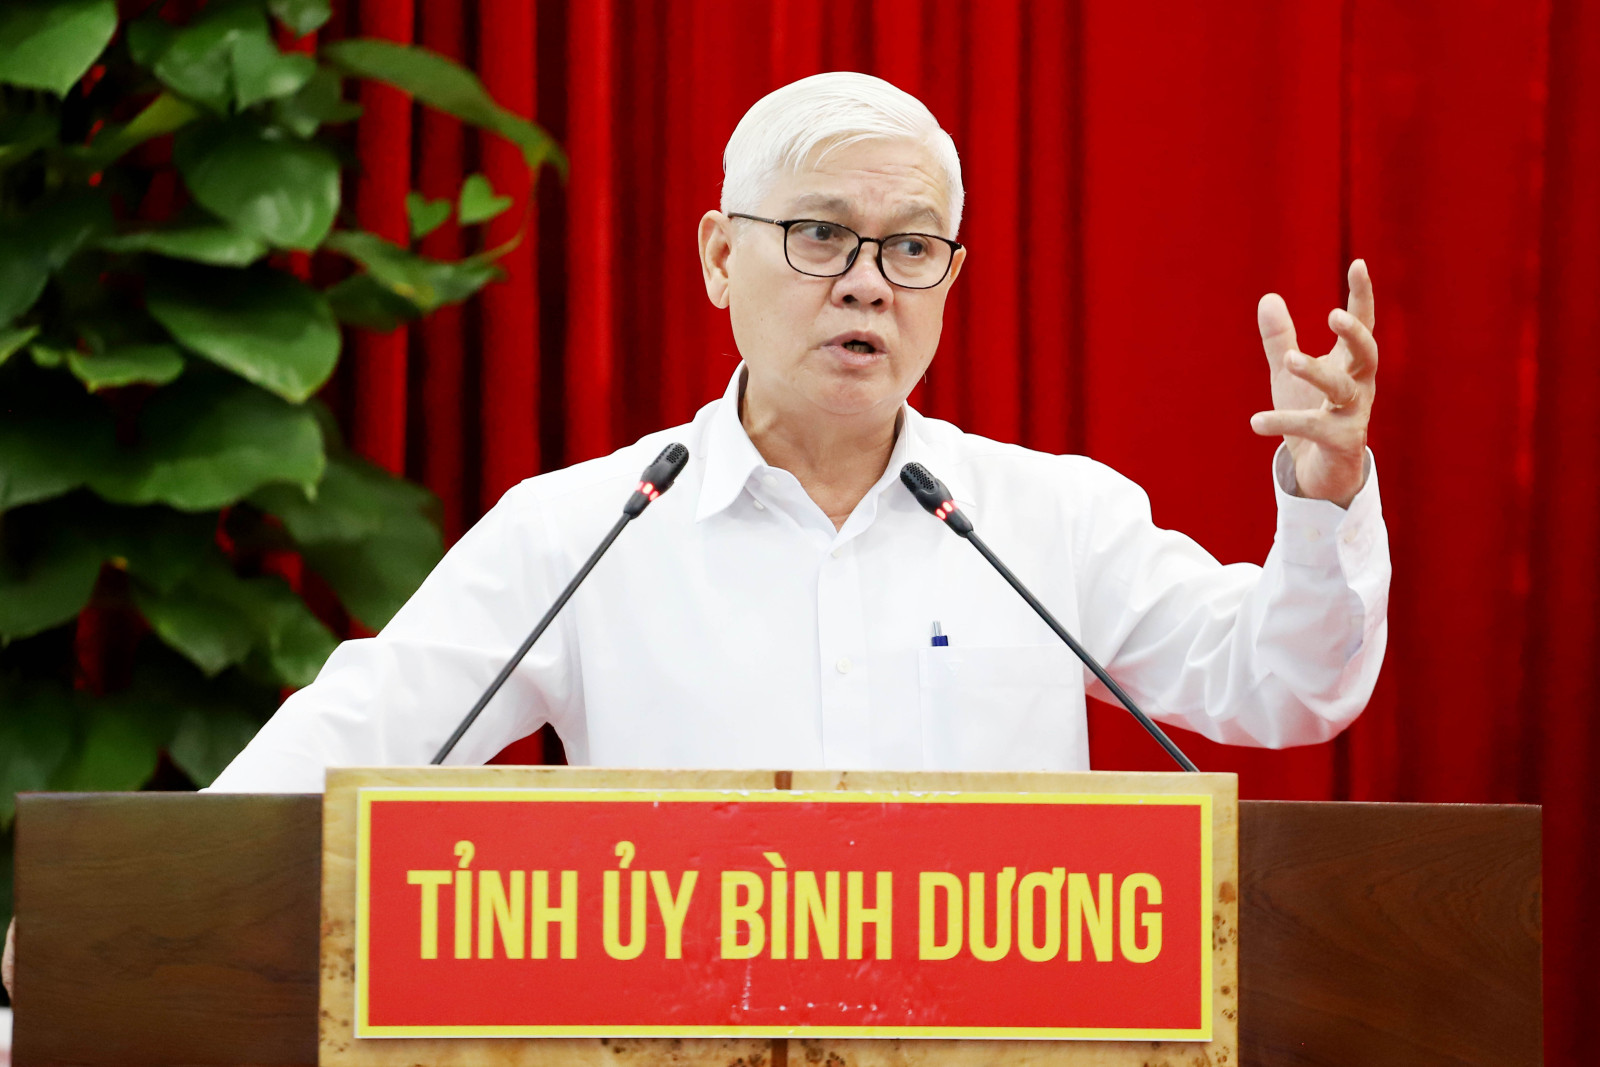 Phát biểu kết luận hội nghị, đồng chí Nguyễn Văn Lợi cho biết quan điểm của Tỉnh ủy là phải đột phá và tăng tốc mạnh mẽ hơn trong phát triển.